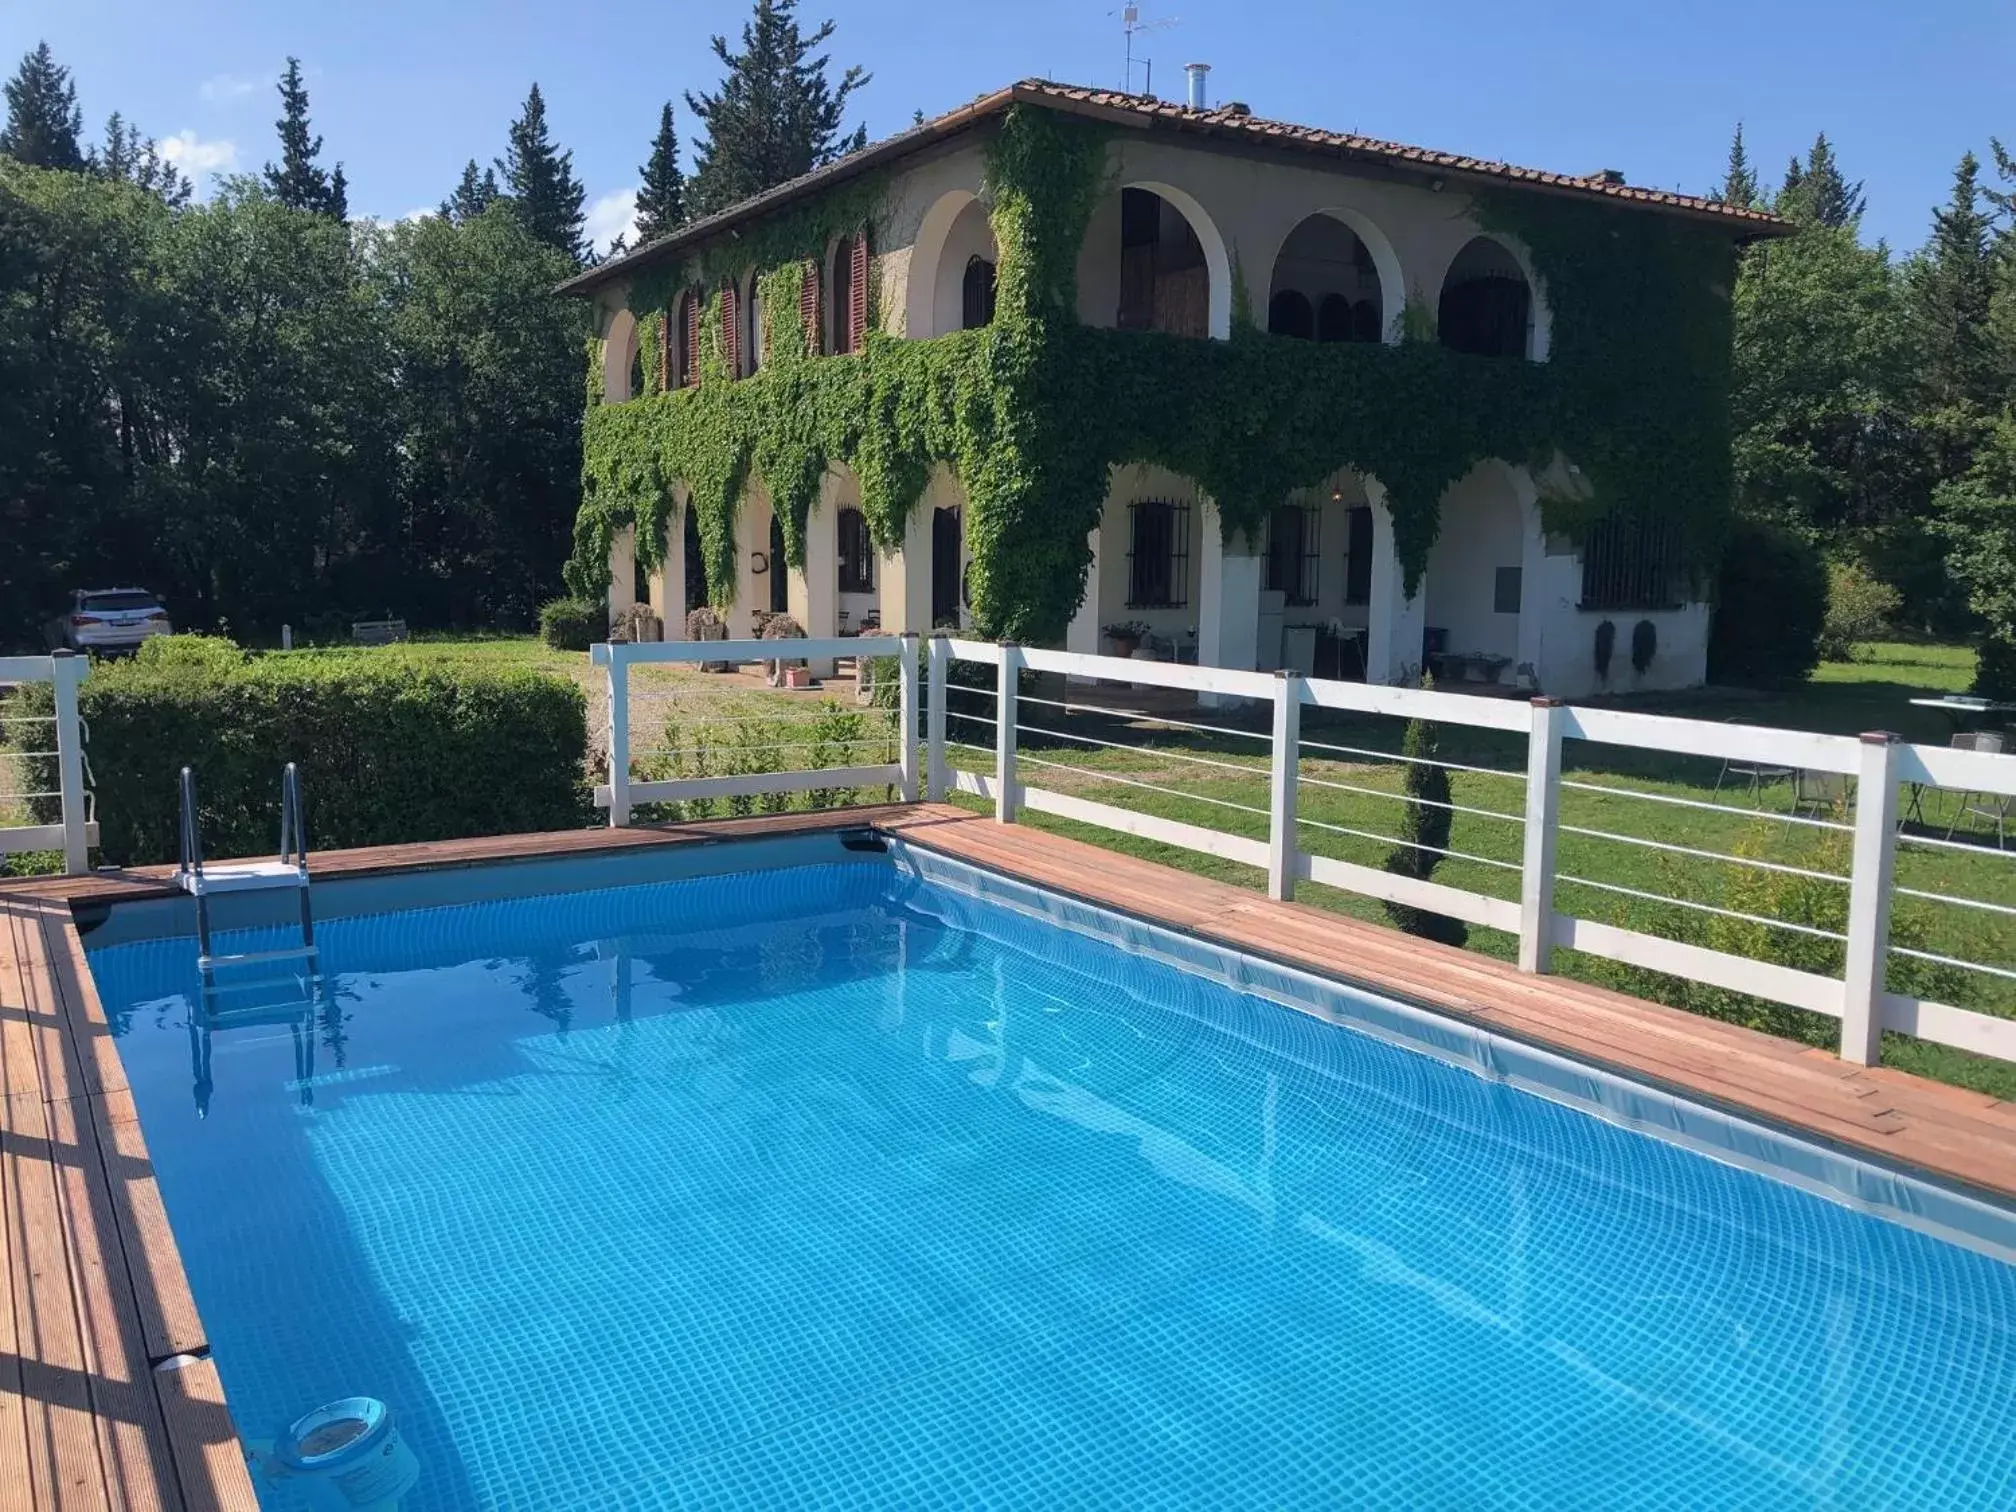 Swimming Pool in Villa Albertina